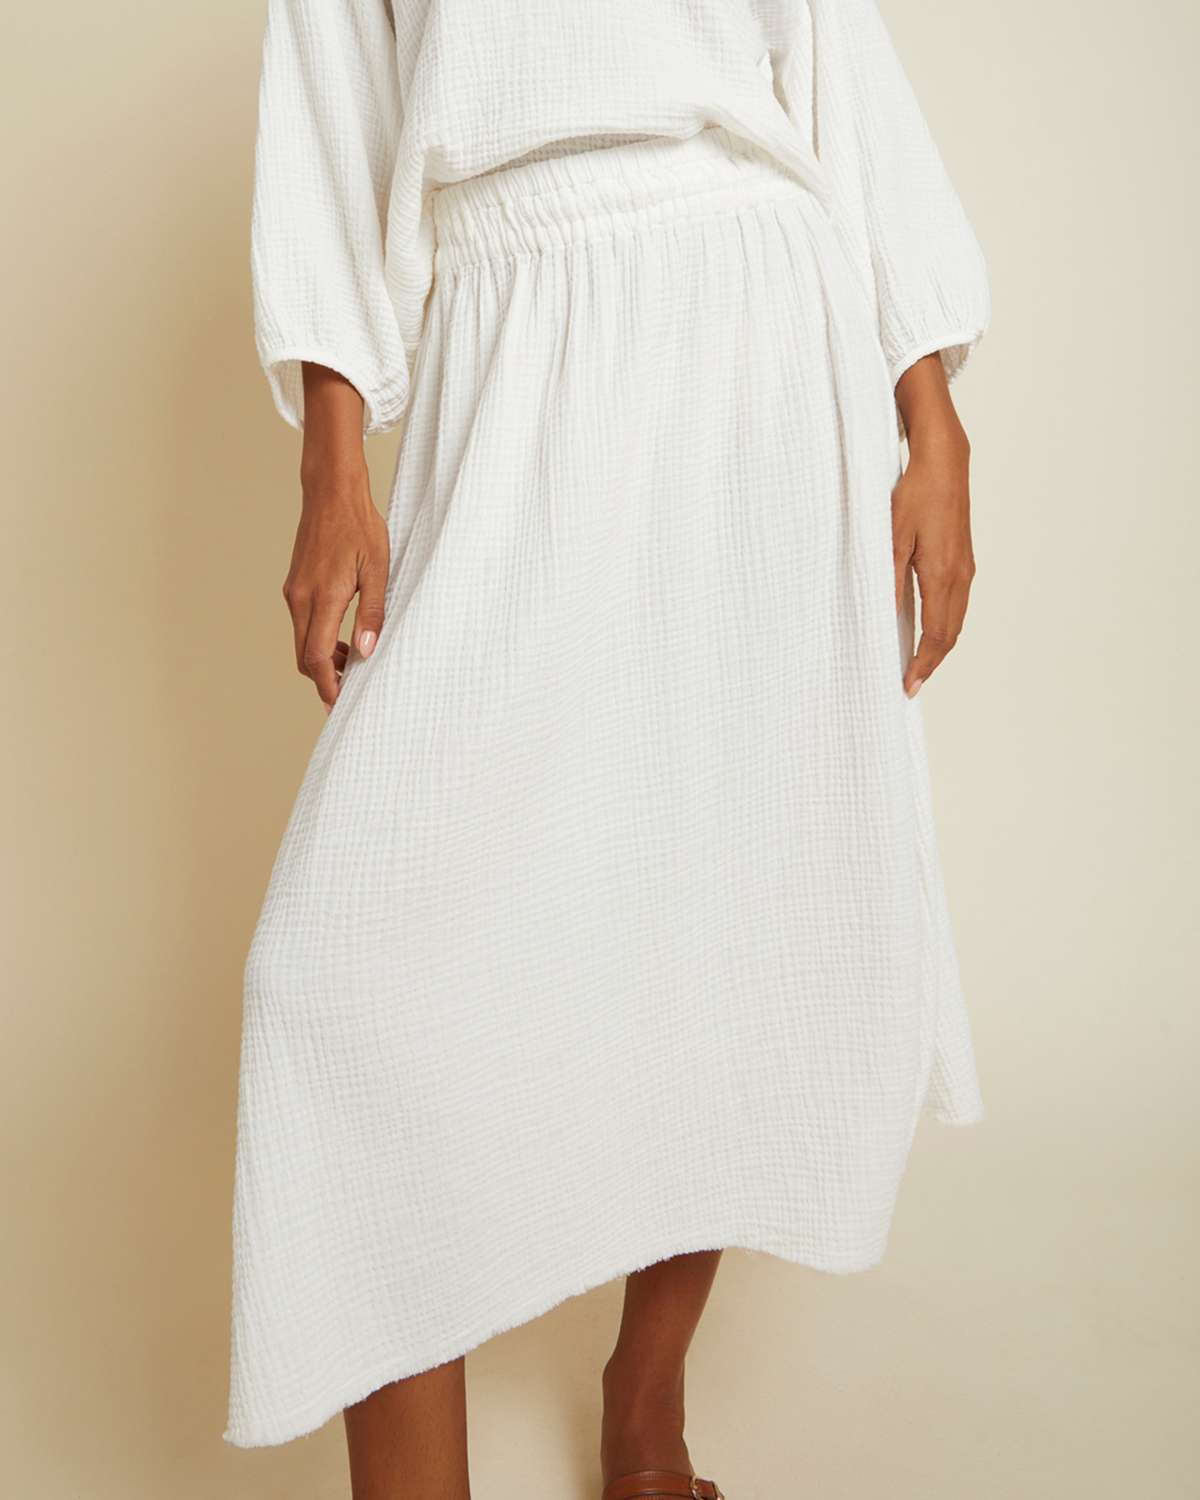 Safa Skirt in White